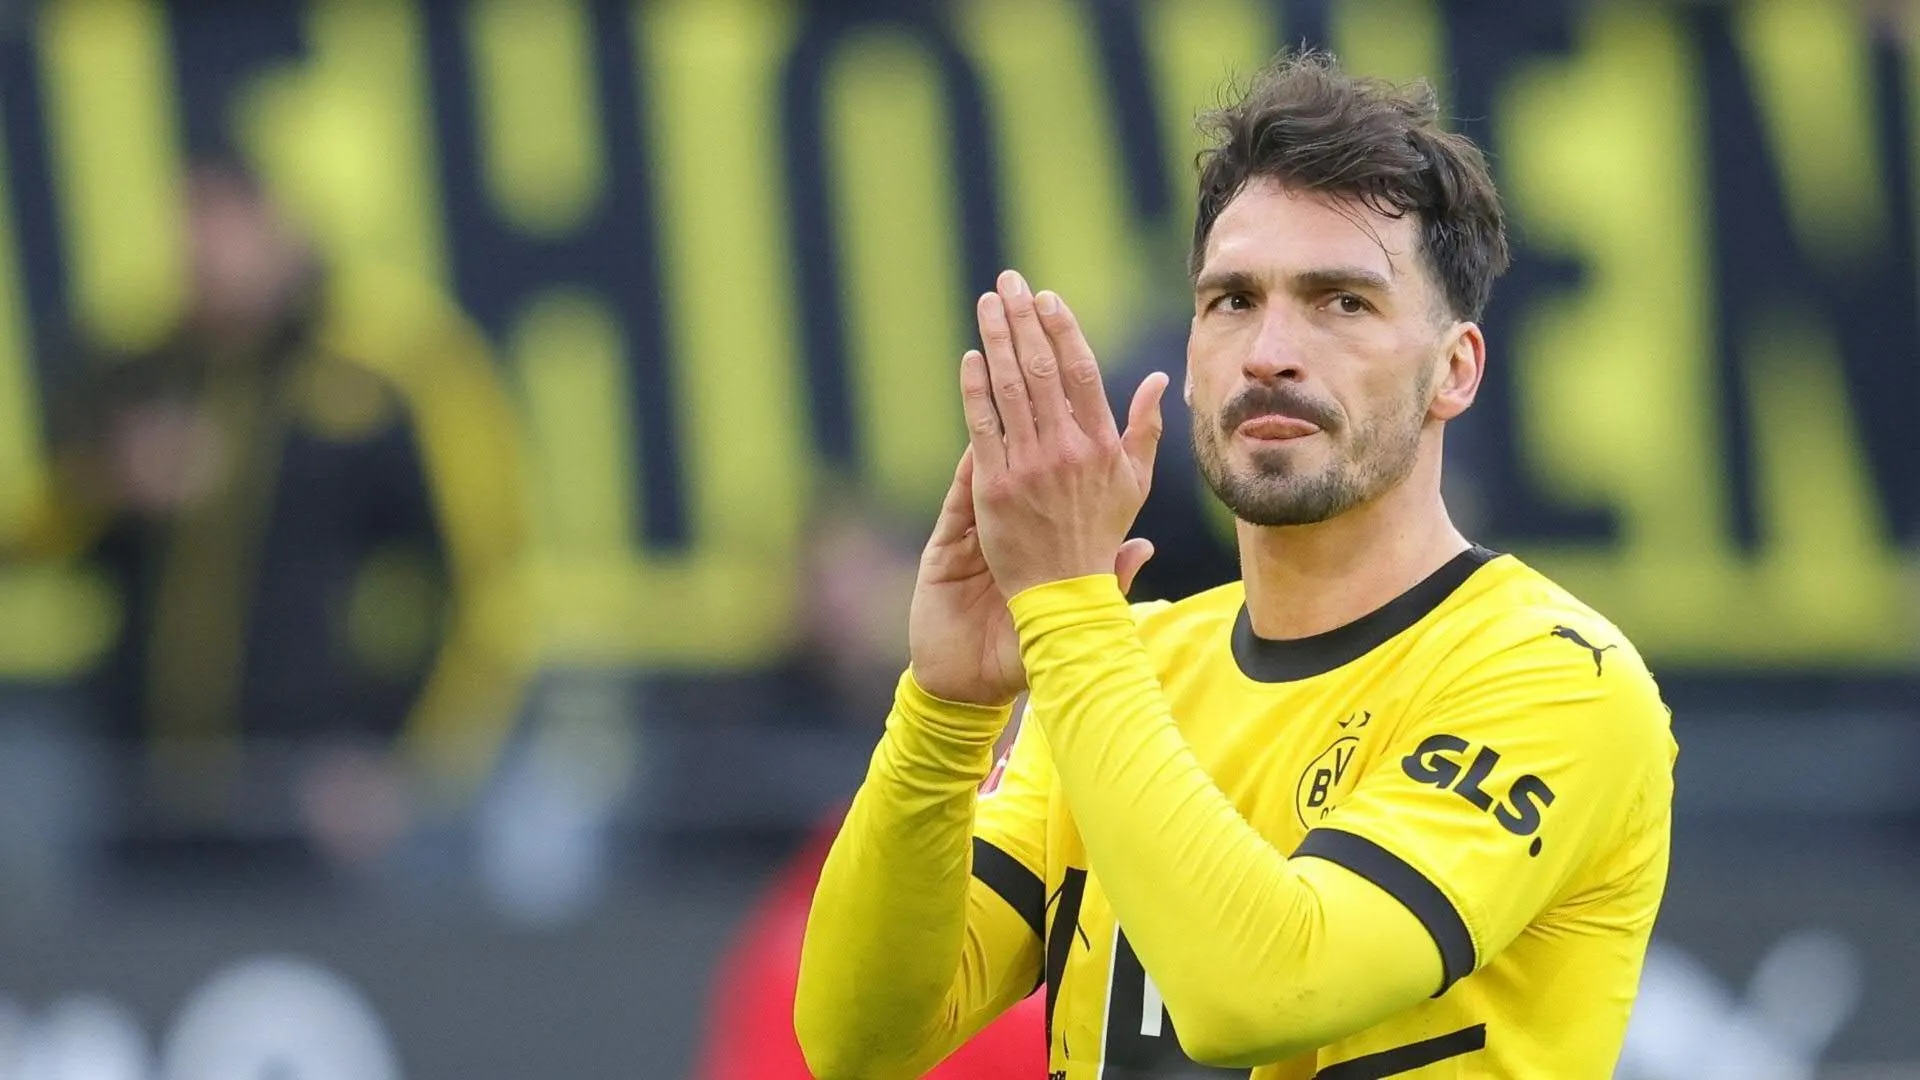 Kein neuer Vertrag: Hummels verlässt Borussia Dortmund